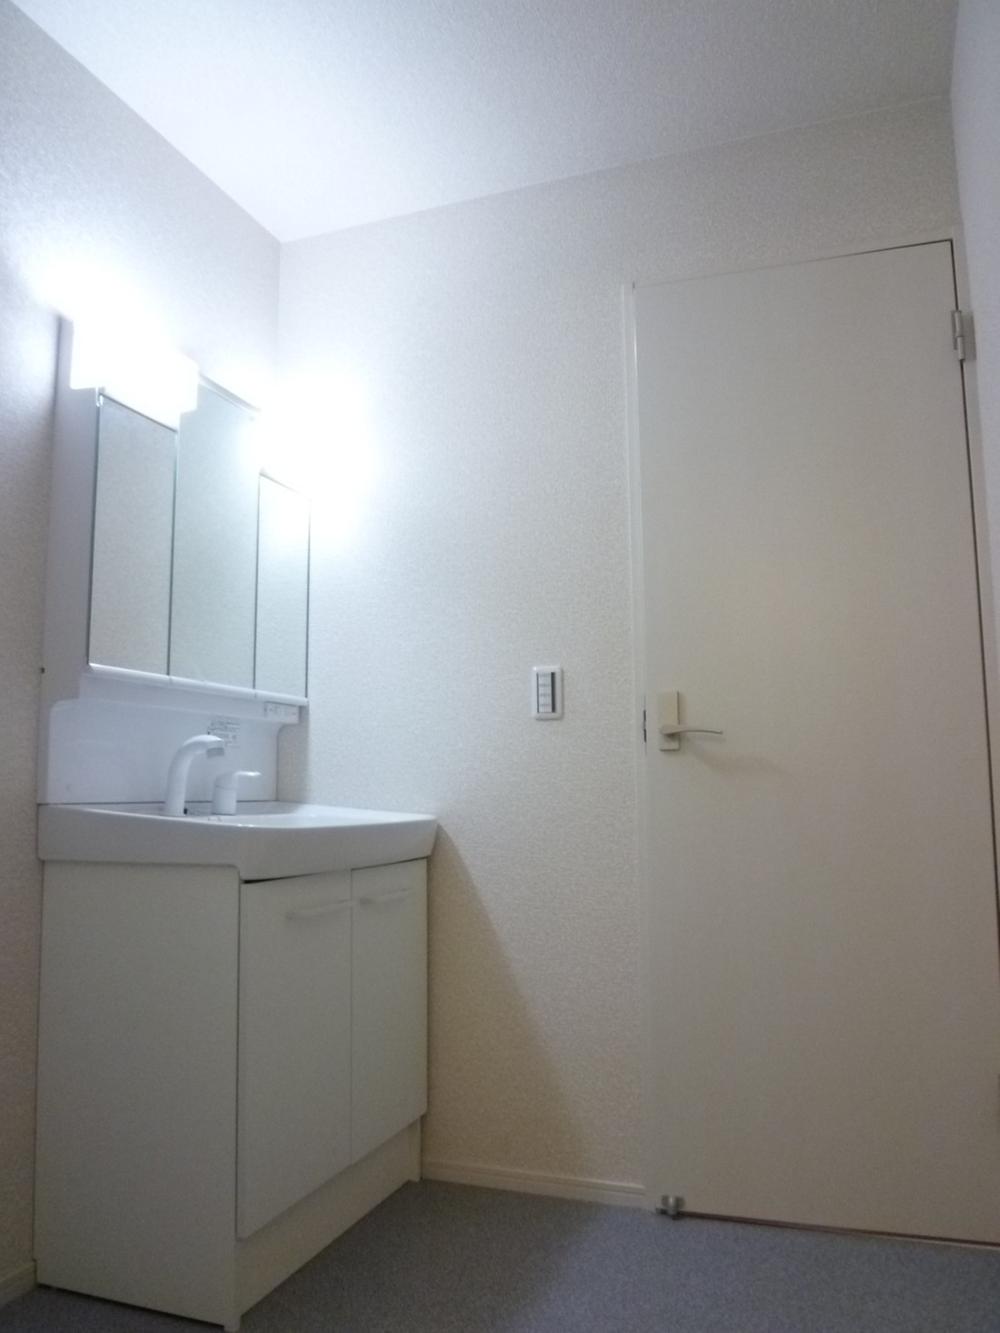 Wash basin, toilet. Building 2 Bathroom Vanity